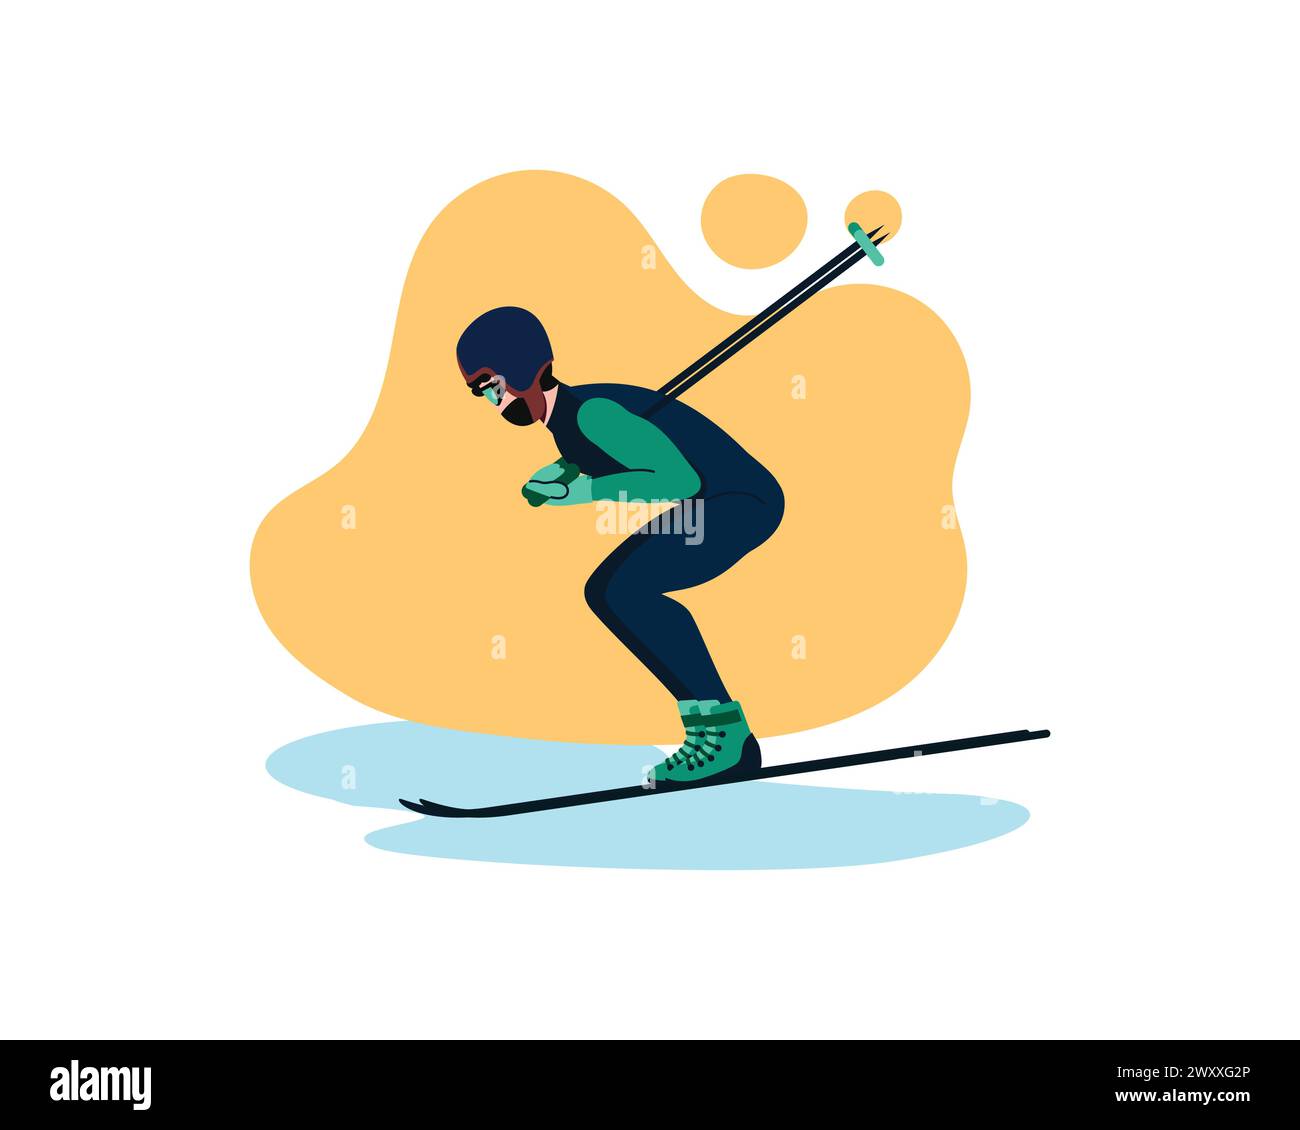 Sportmann Skifahren. Vektor-Illustration des Skifahrers, der vom Berg springt, in Aktion Position isoliert auf weiß. Winter Extremsport, Wettkampfkonzept Stock Vektor